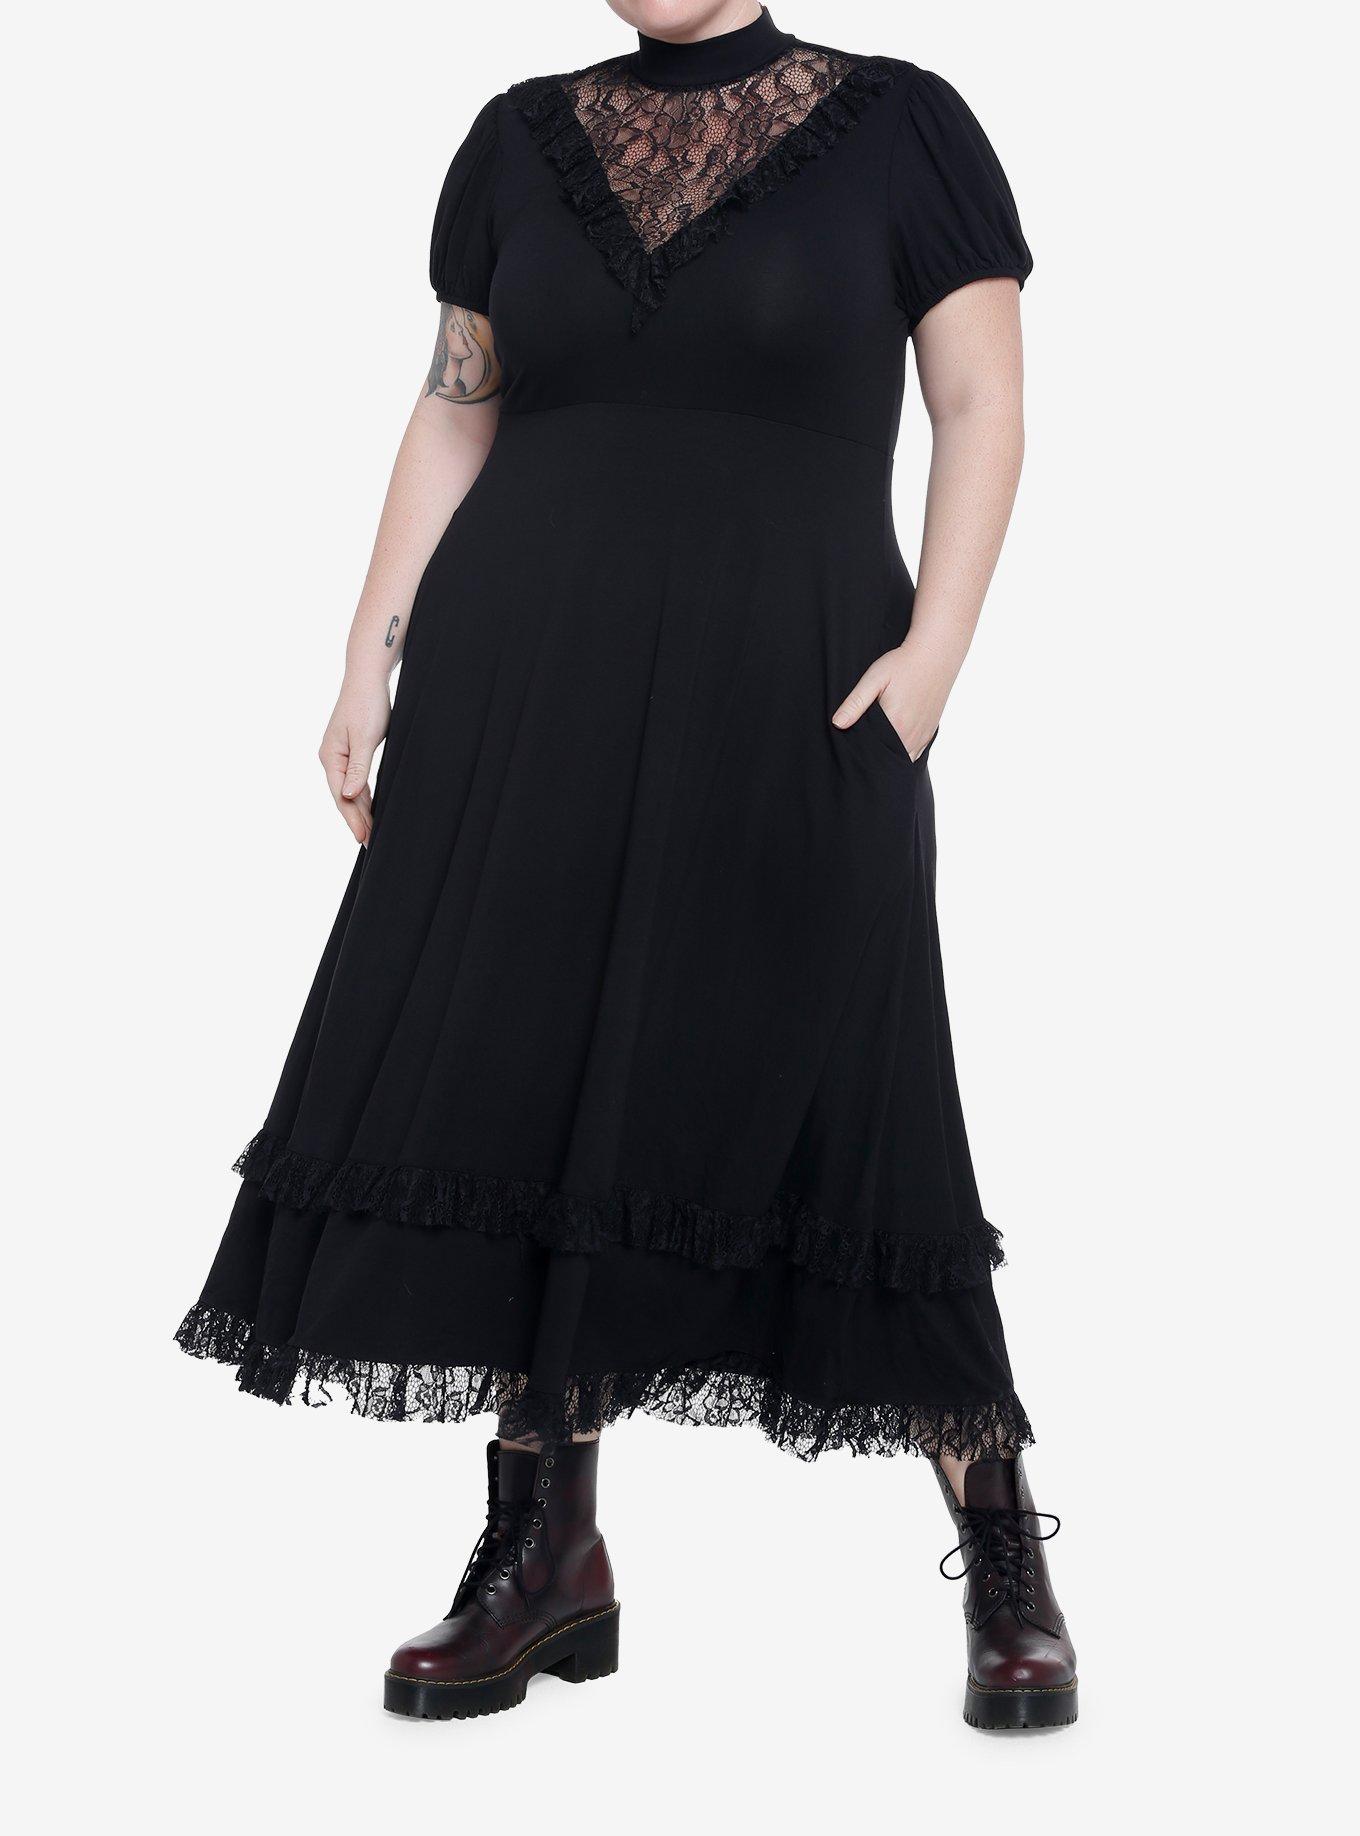 Black Lace Midi Dress Plus Size, BLACK, alternate